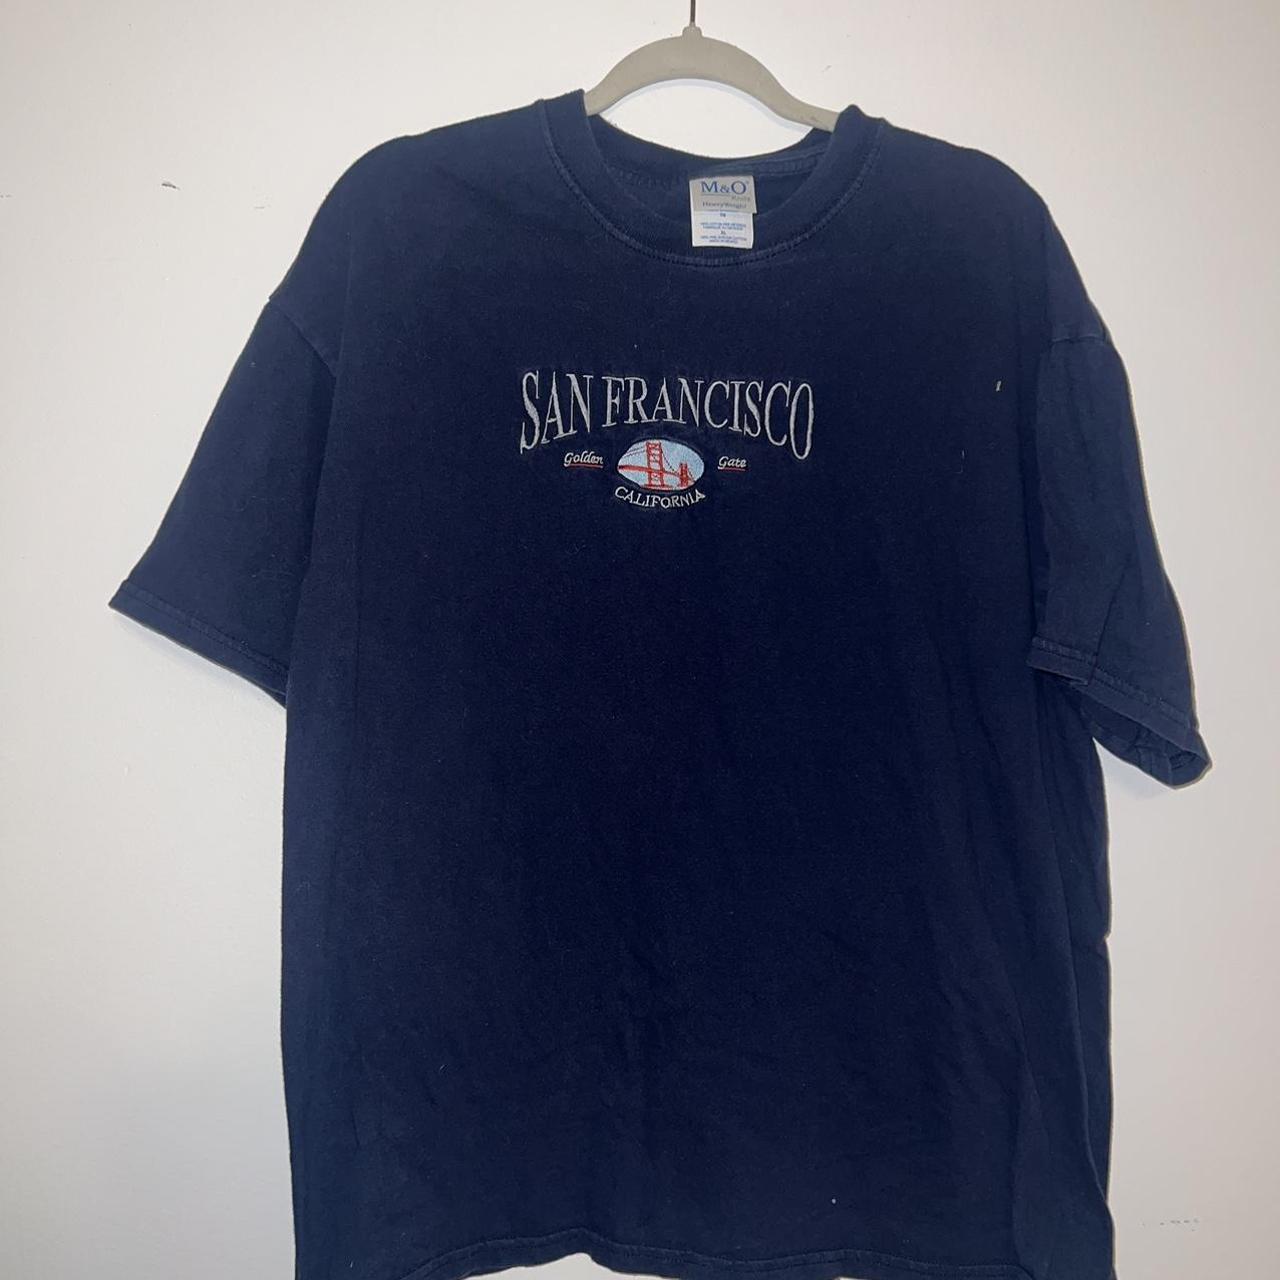 Vintage San Francisco T-Shirt - Depop